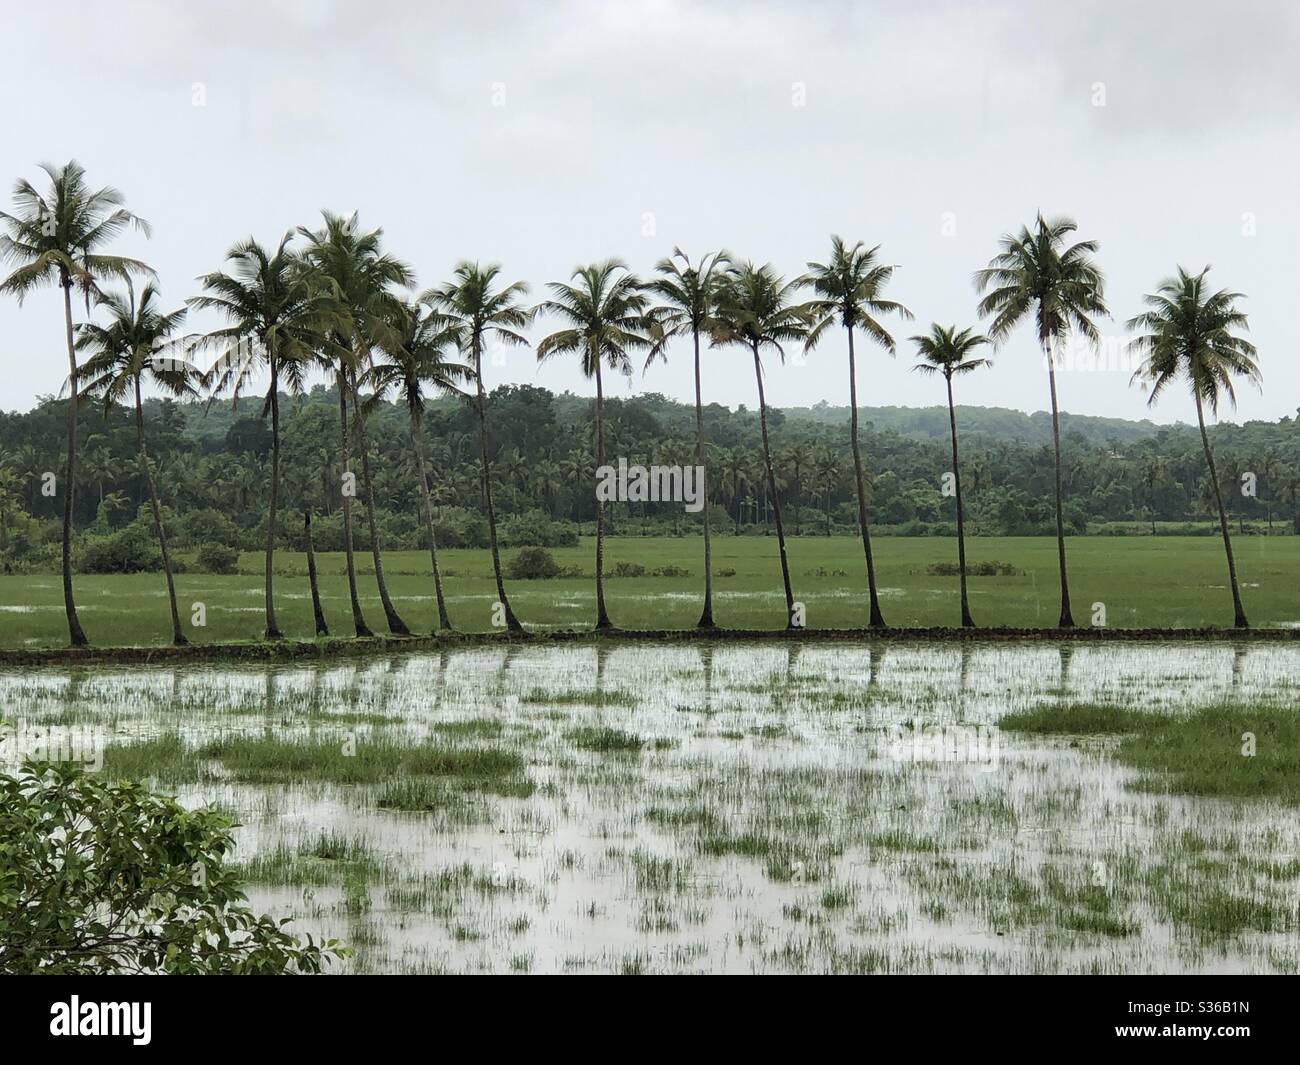 Eine Reihe von Kokospalmen inmitten von überfluteten Reisfeldern in Arambol, Goa, Indien. Goa wurde von Portugal für 451 Jahre und bis 1961 regiert. 18.Mai 2020. Stockfoto